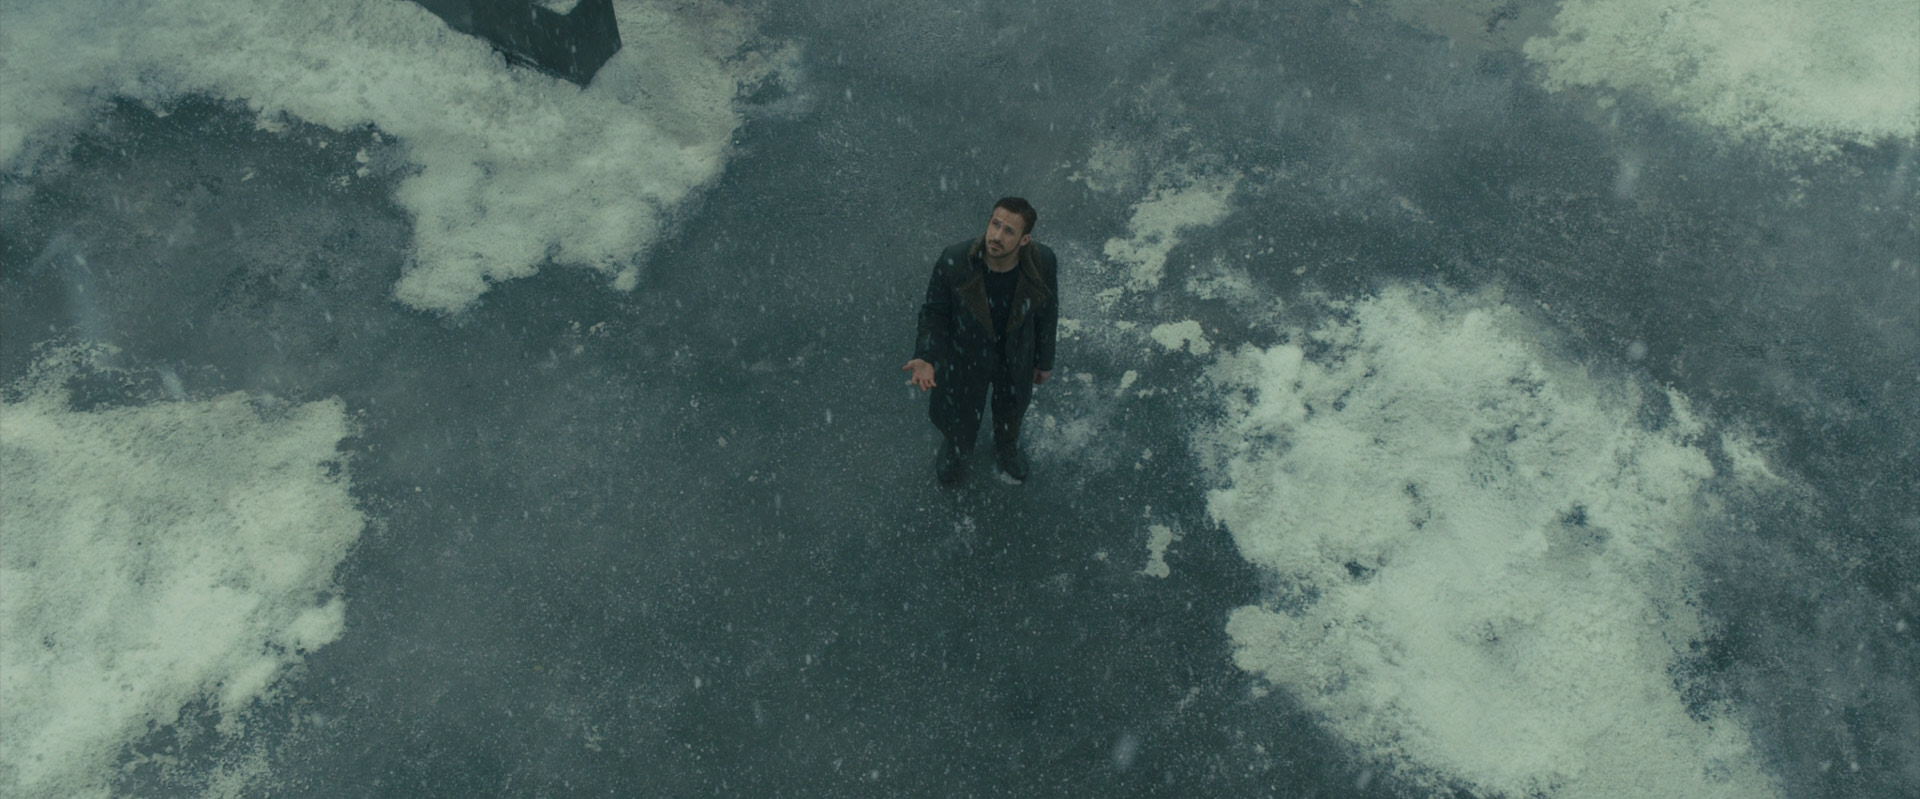 Blade Runner 2049: Das Bild zeigt einen Mann, der auf einer Eisplatte steht, die ein paar Schneehaufen hat. Er blickt nach oben und hält die Hand auf, auf der sich der Schnee legt